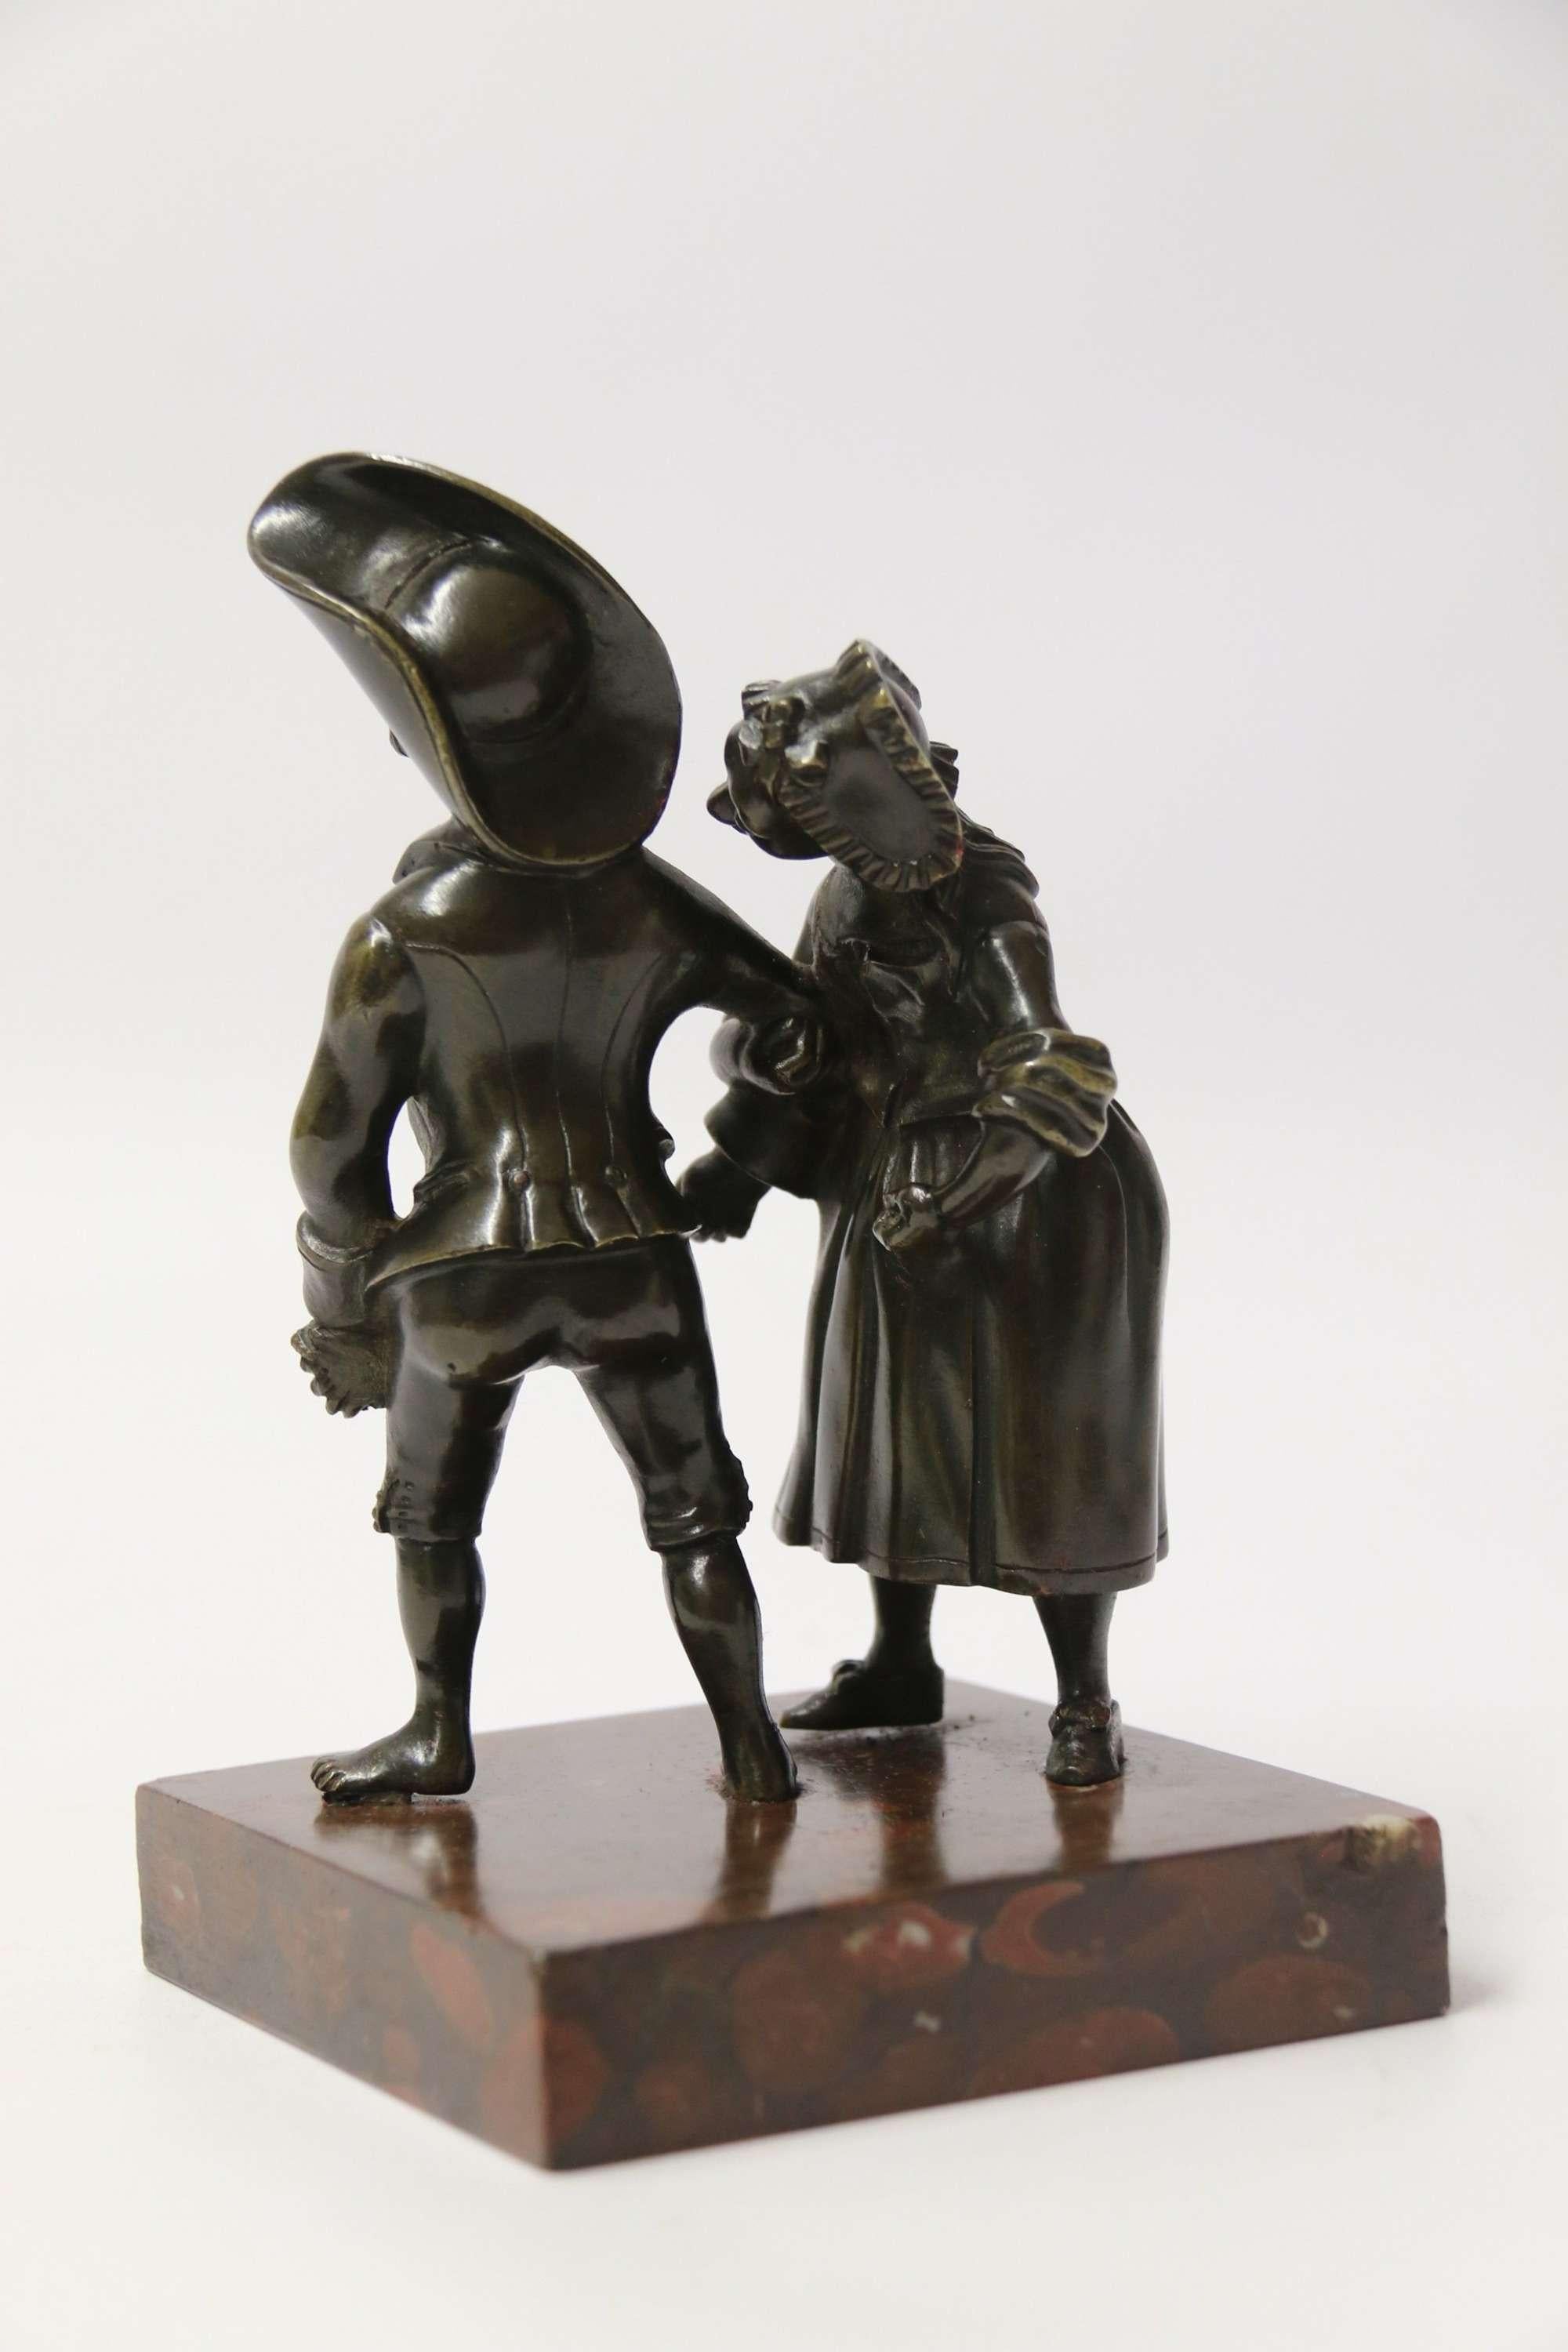 Eine höchst amüsante italienische Bronzestudie aus dem 19. Jahrhundert, die ein tanzendes junges Paar zeigt.

Diese ungewöhnliche italienische Bronze von hoher Qualität stellt einen jungen Mann und eine junge Frau aus dem 18. Jahrhundert in